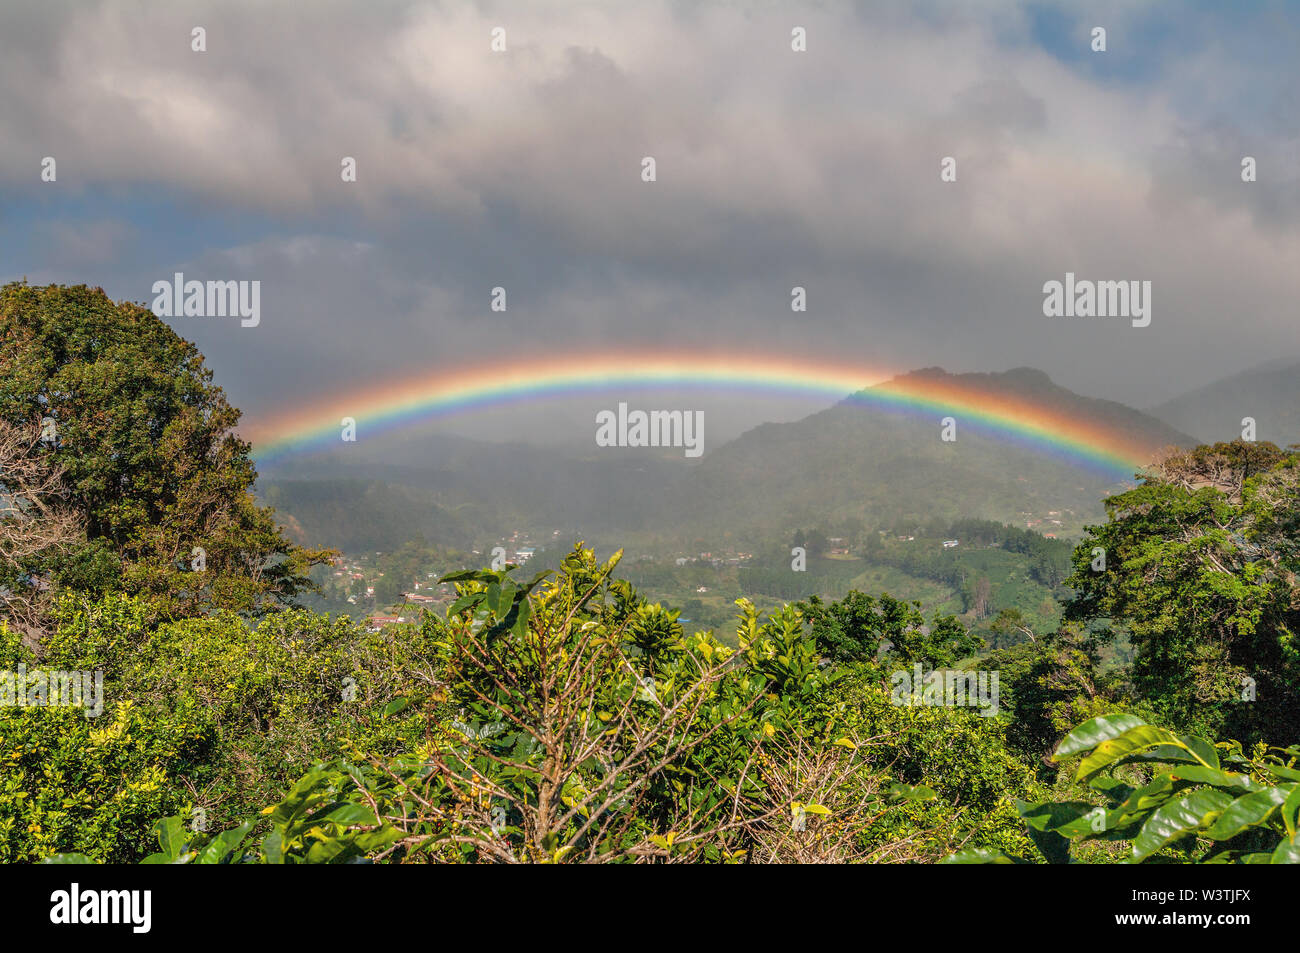 Immagine di un paesaggio di Boquete, Panama, compresa una bella e intensa rainbow. La città di Boquete è nella terra di mezzo, a sinistra. Foto Stock